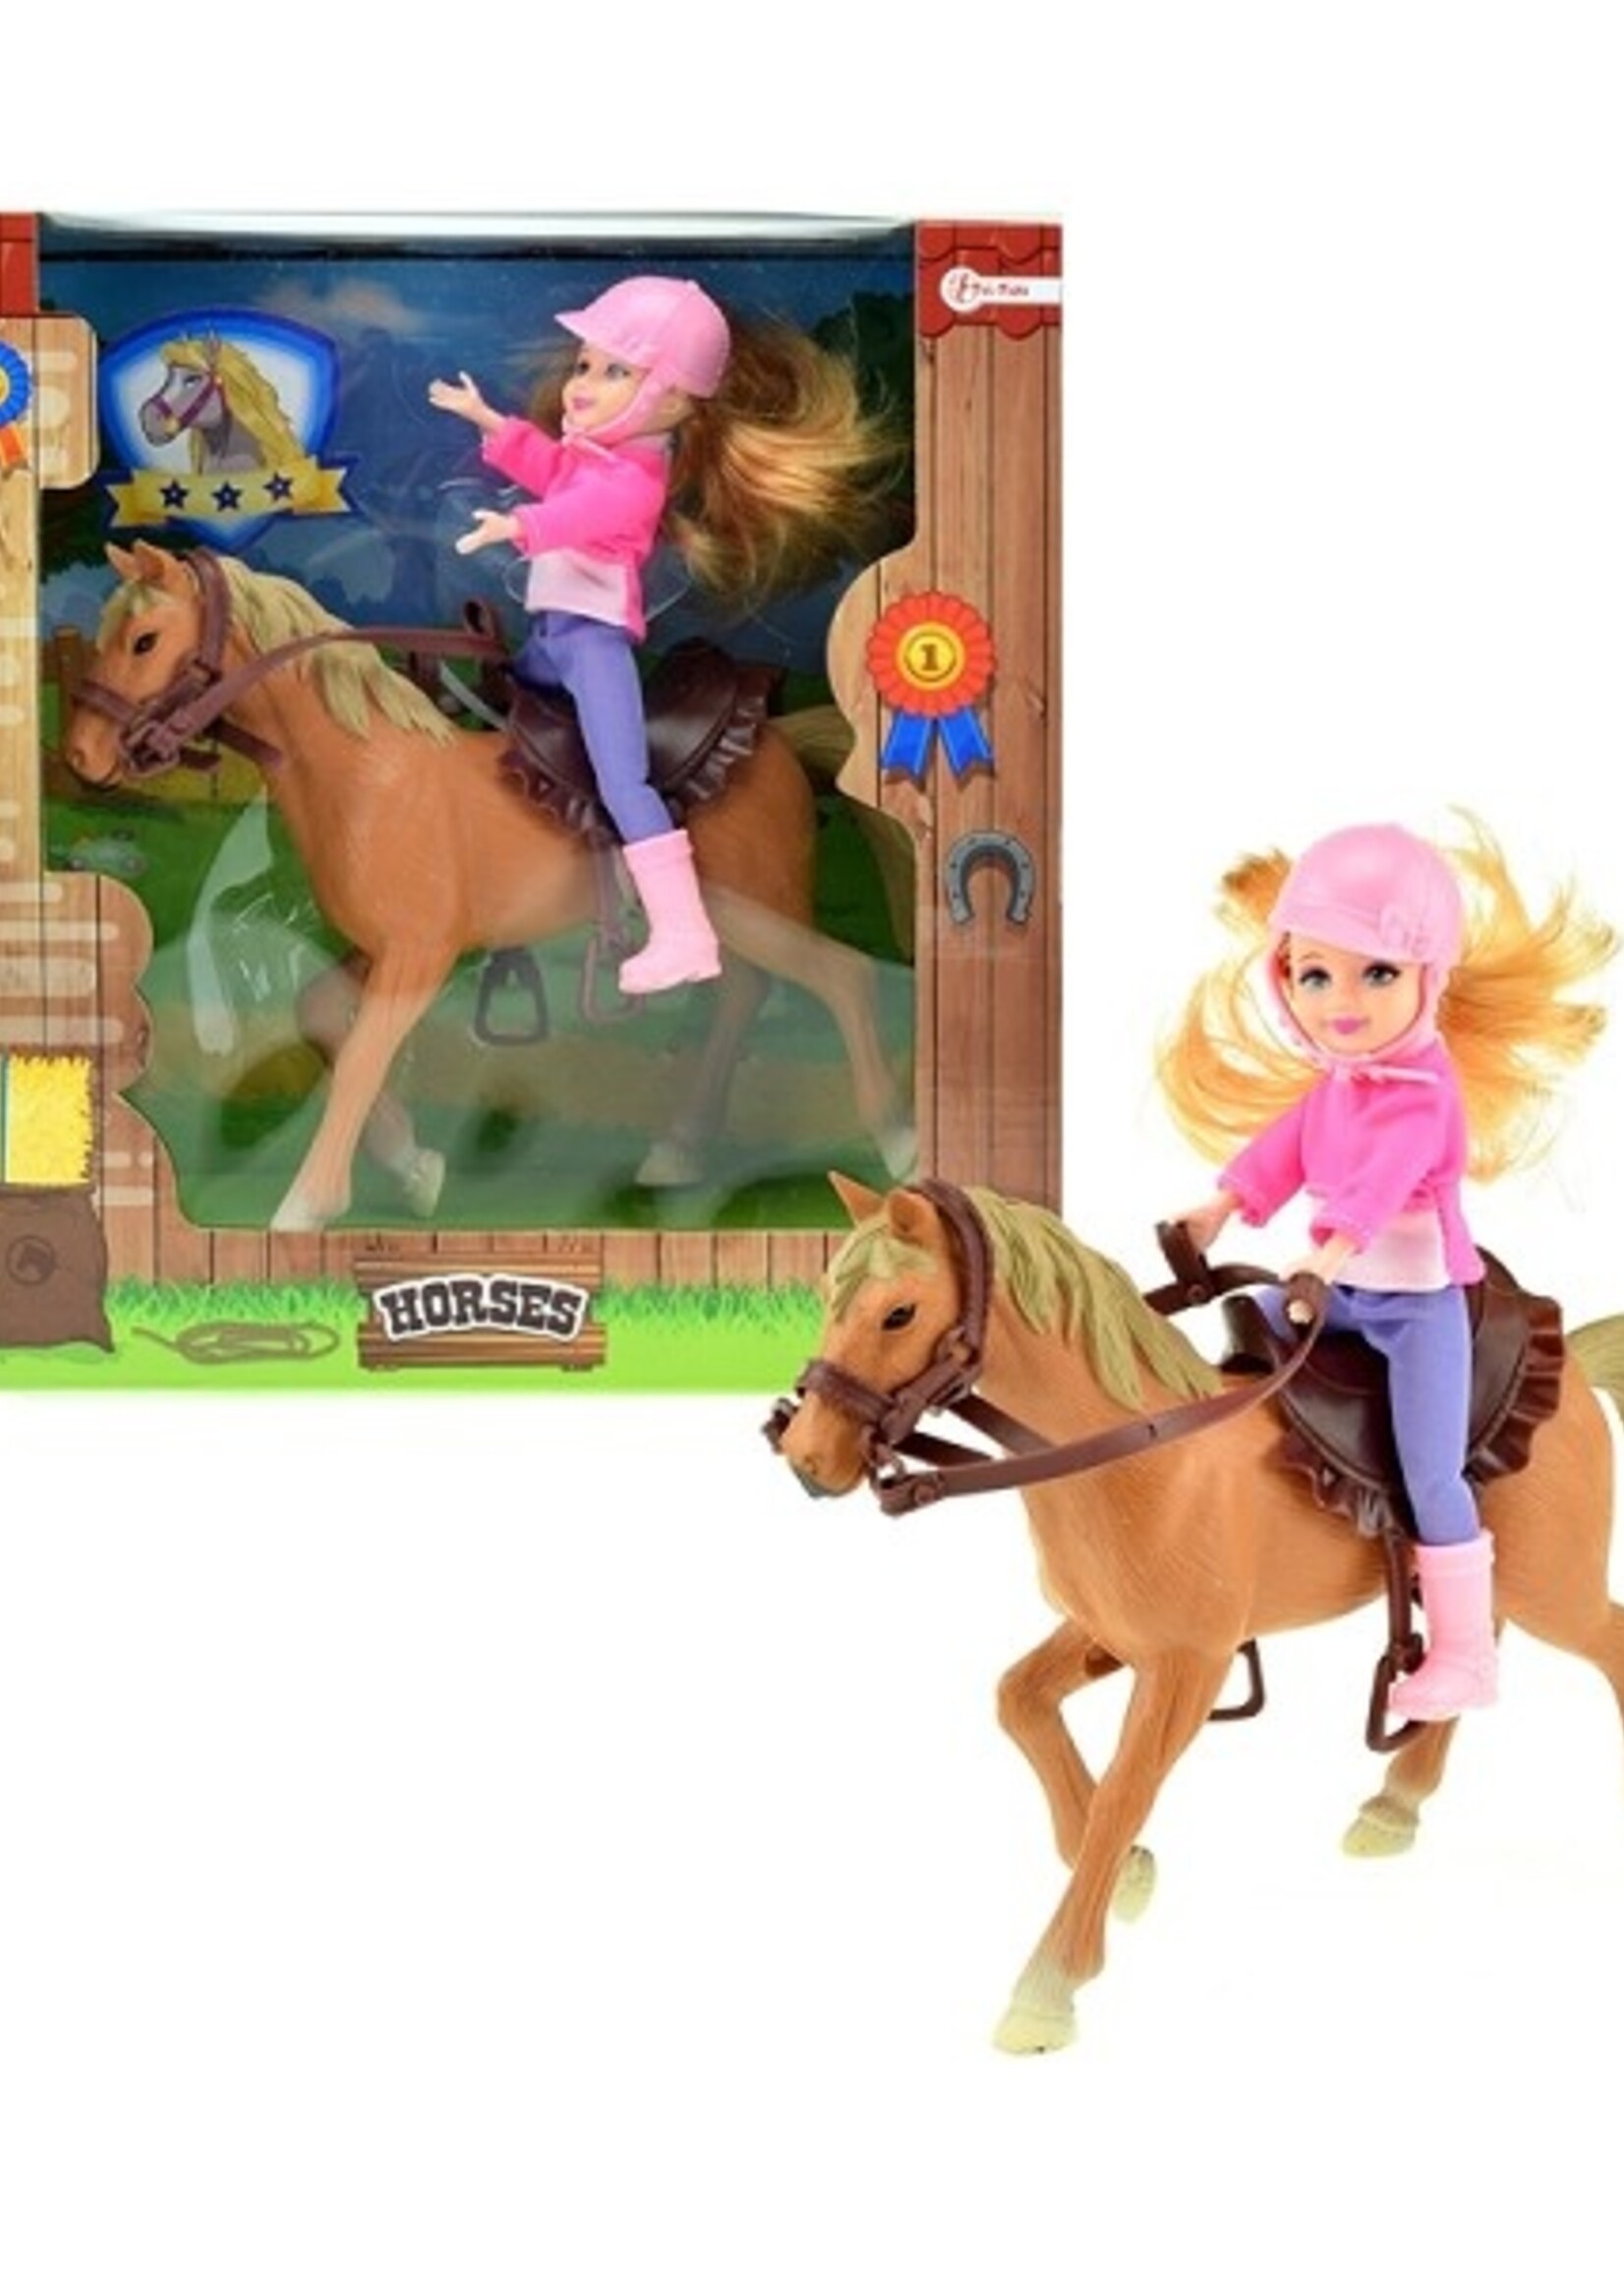 Toi Toys Horses Tienerpop klein op paard in vensterdoos